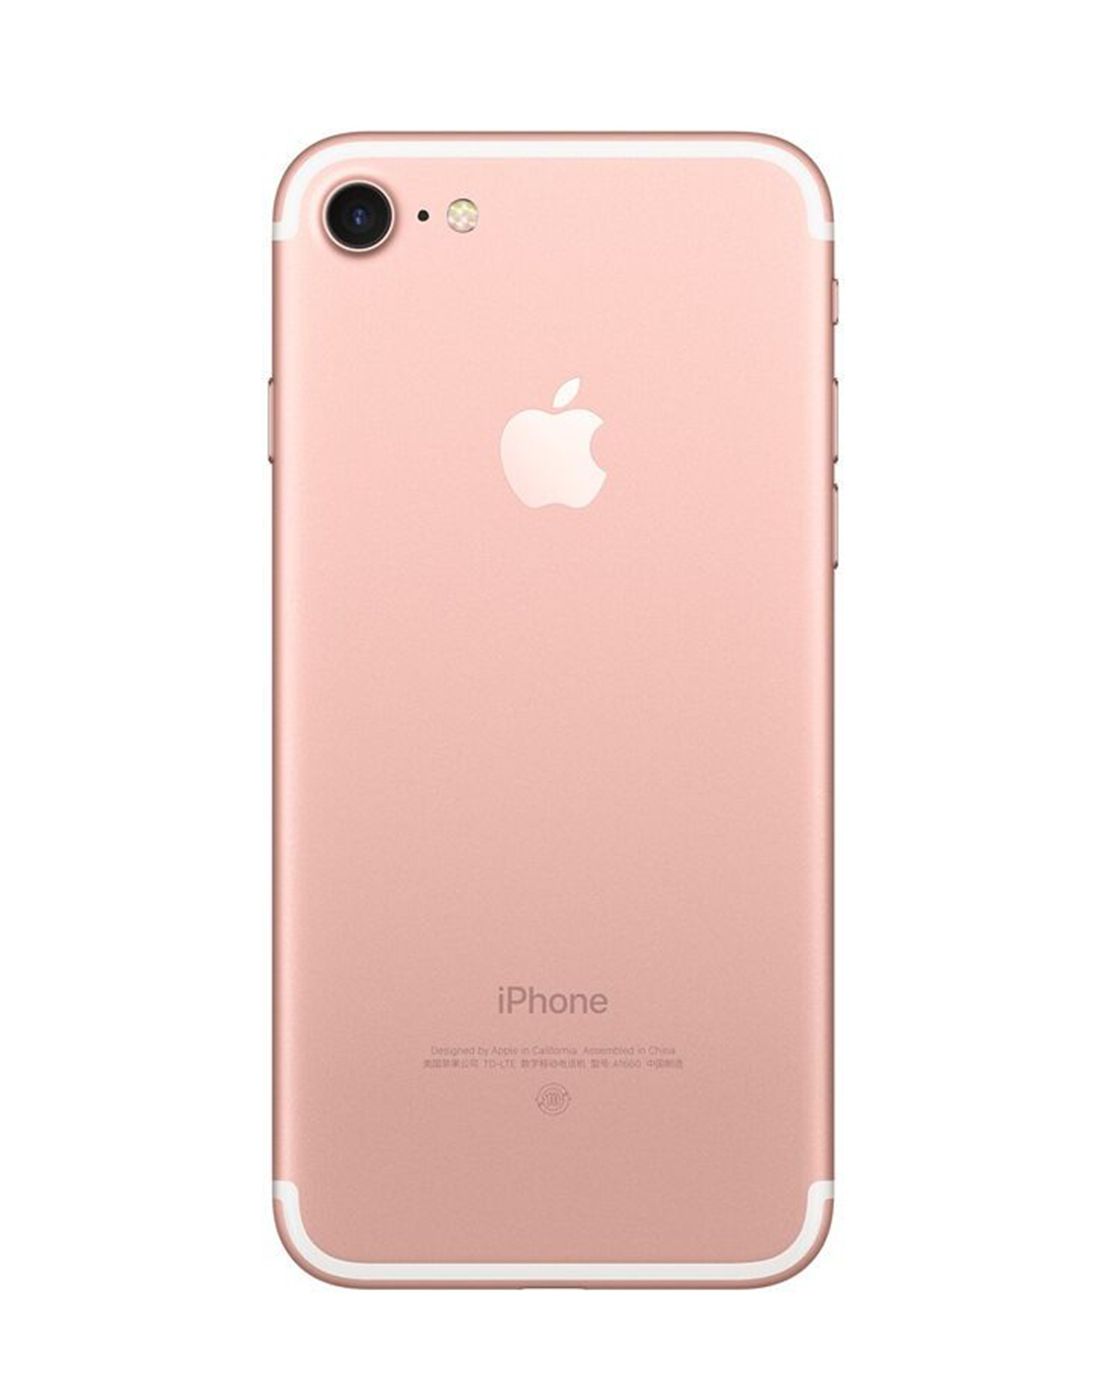 谁说男人不能买玫瑰金？iPhone 7/7 Plus五大颜色选购最全攻略 - 雷科技